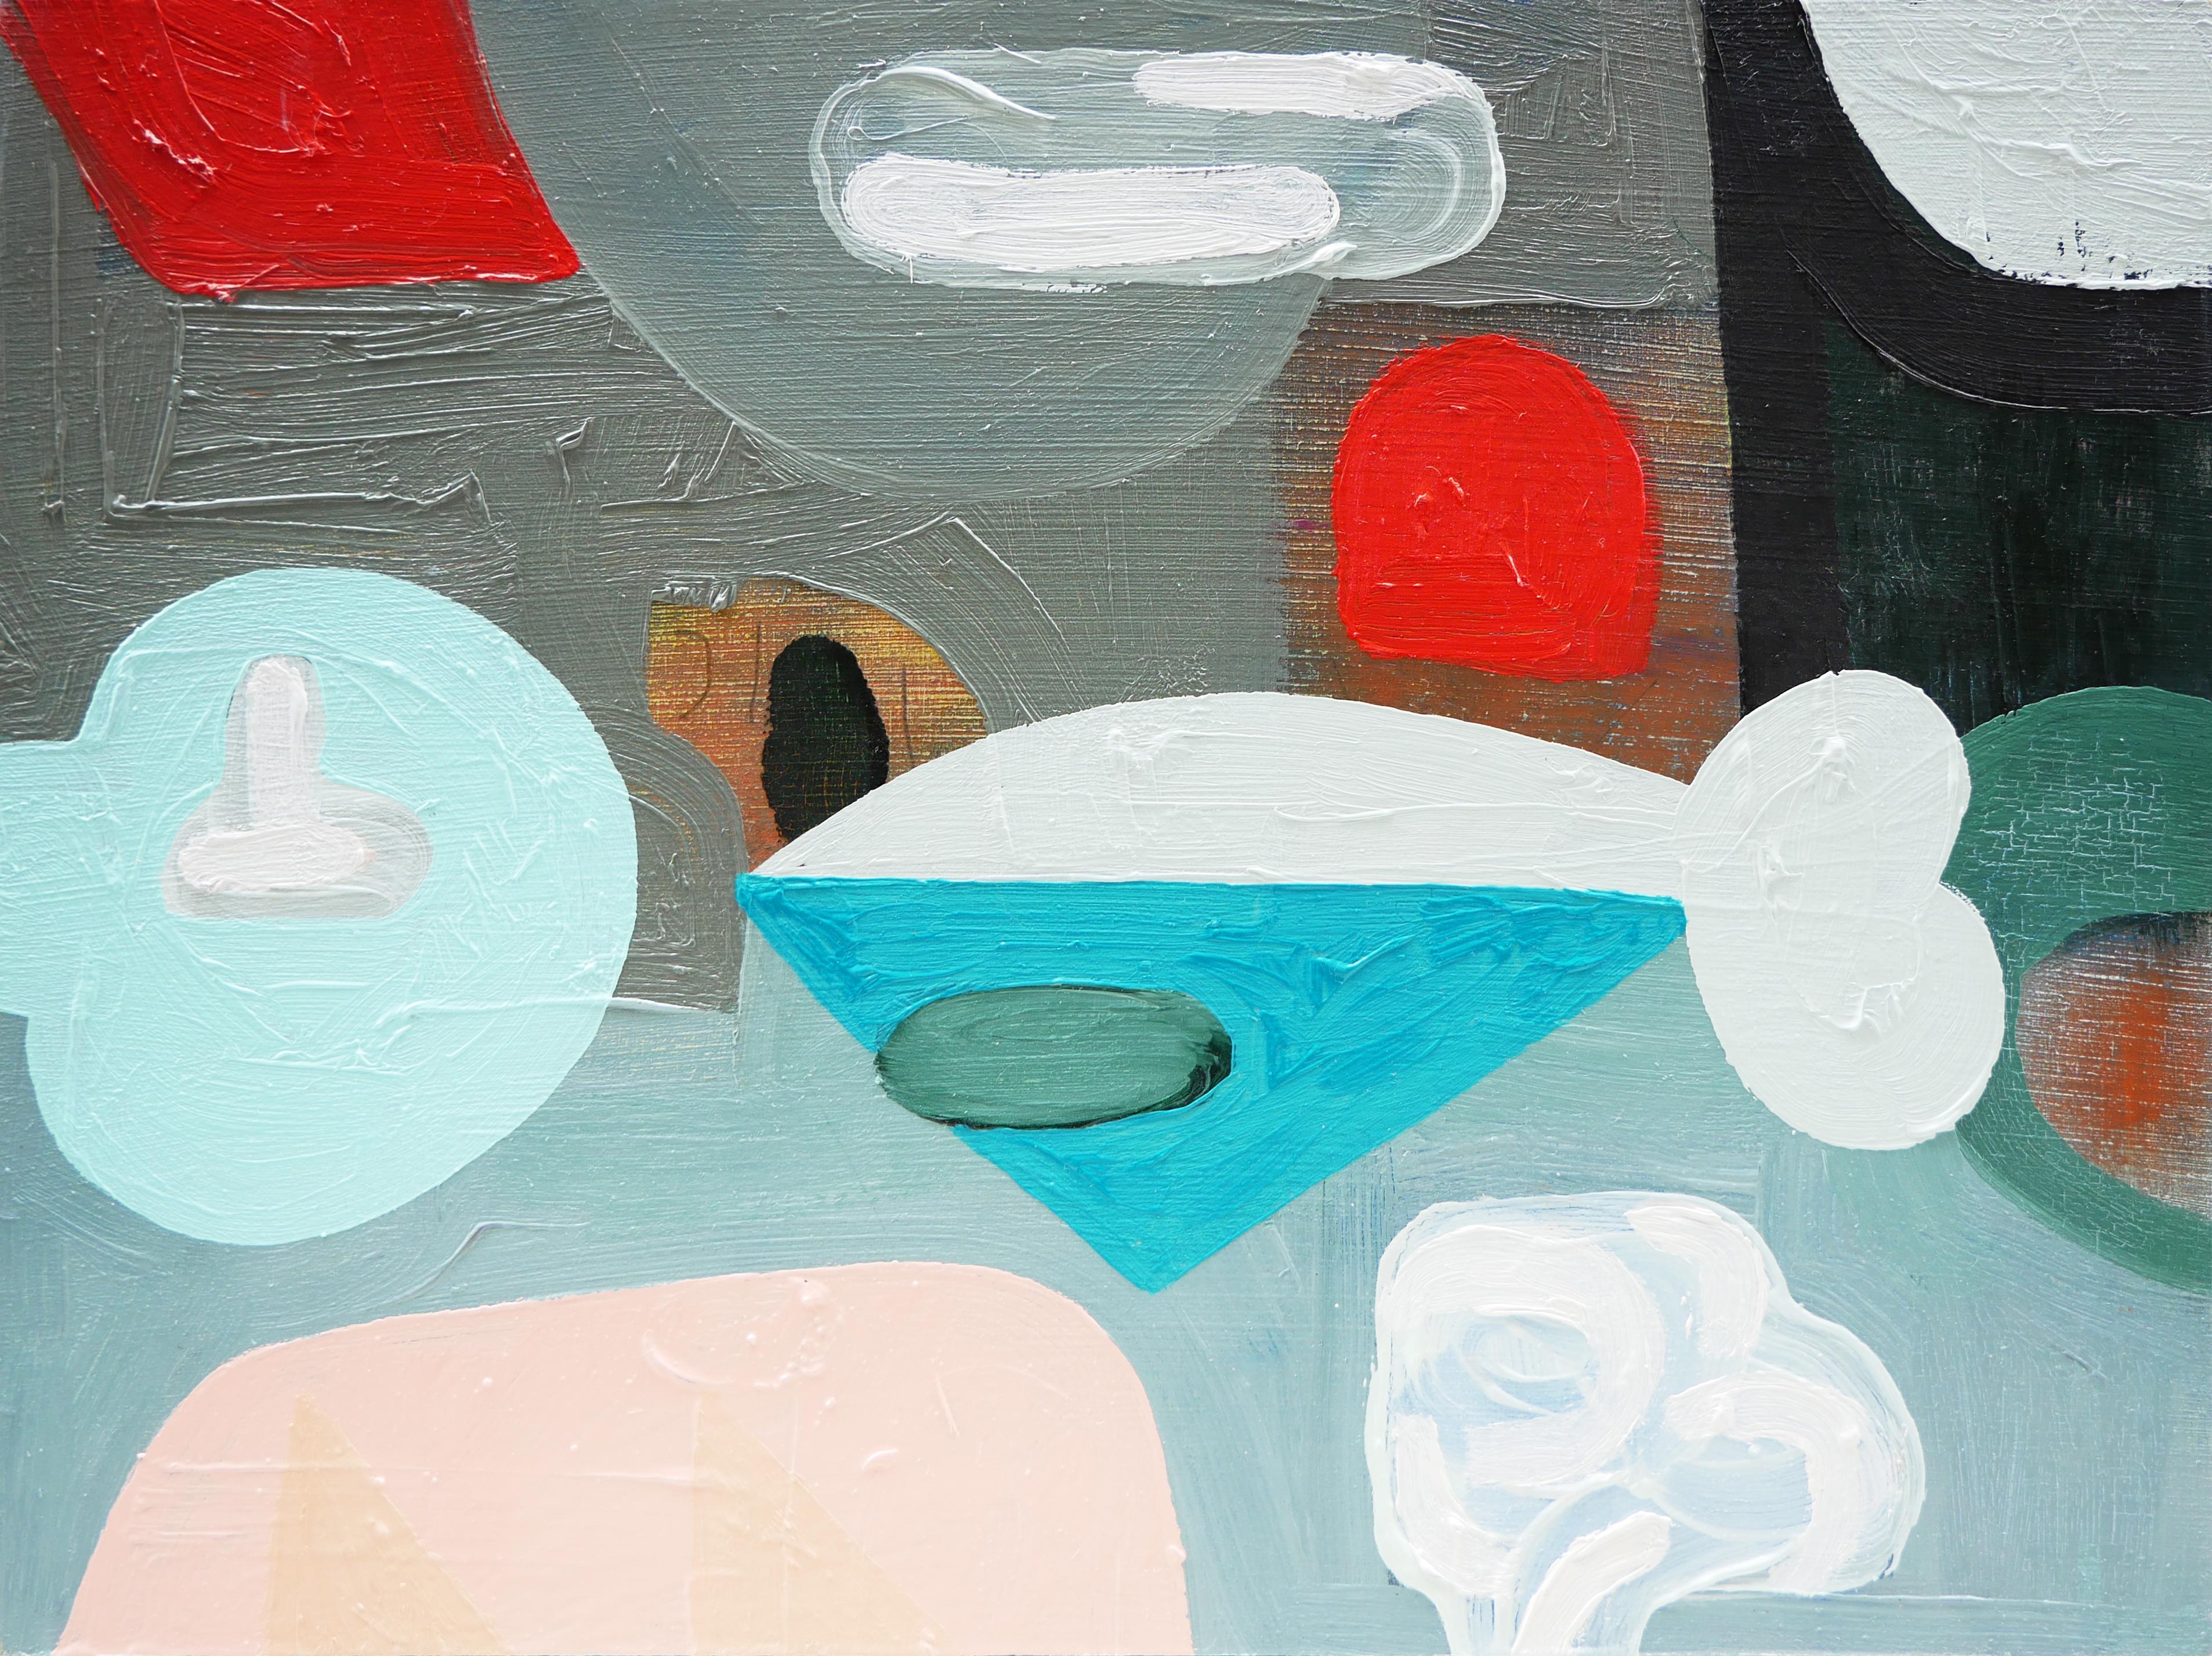 Peter Healy Abstract Painting – Abstraktes zeitgenössisches Gemälde „Cold Cut 1“ in Pastellblau, Rot, Grau und Rosa